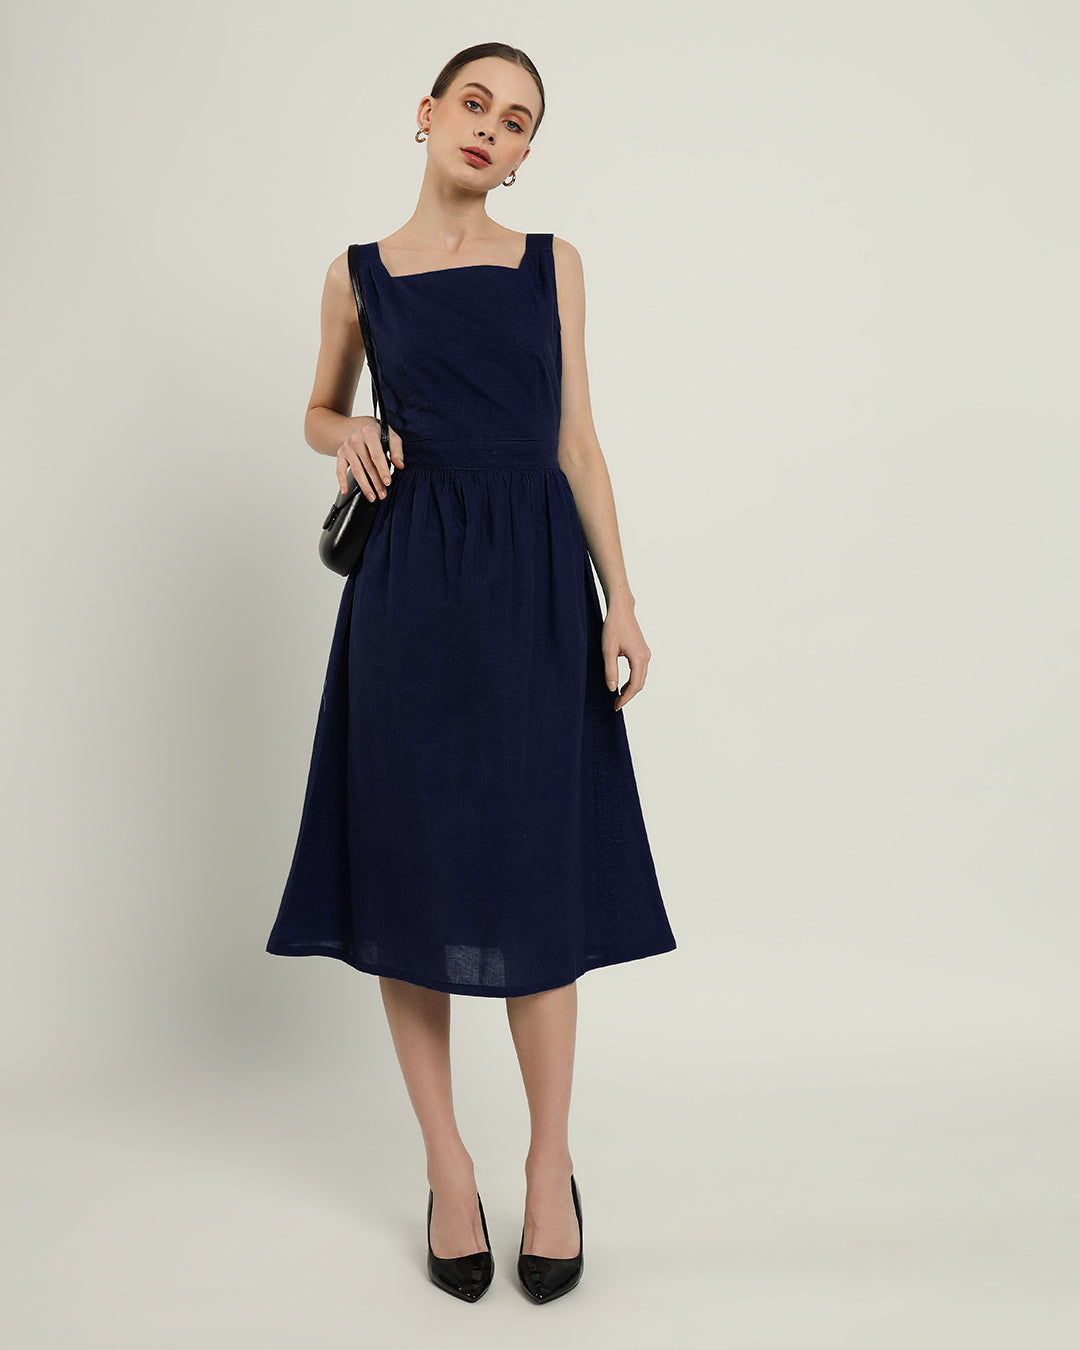 The Mihara Daisy Midnight Blue Linen Dress